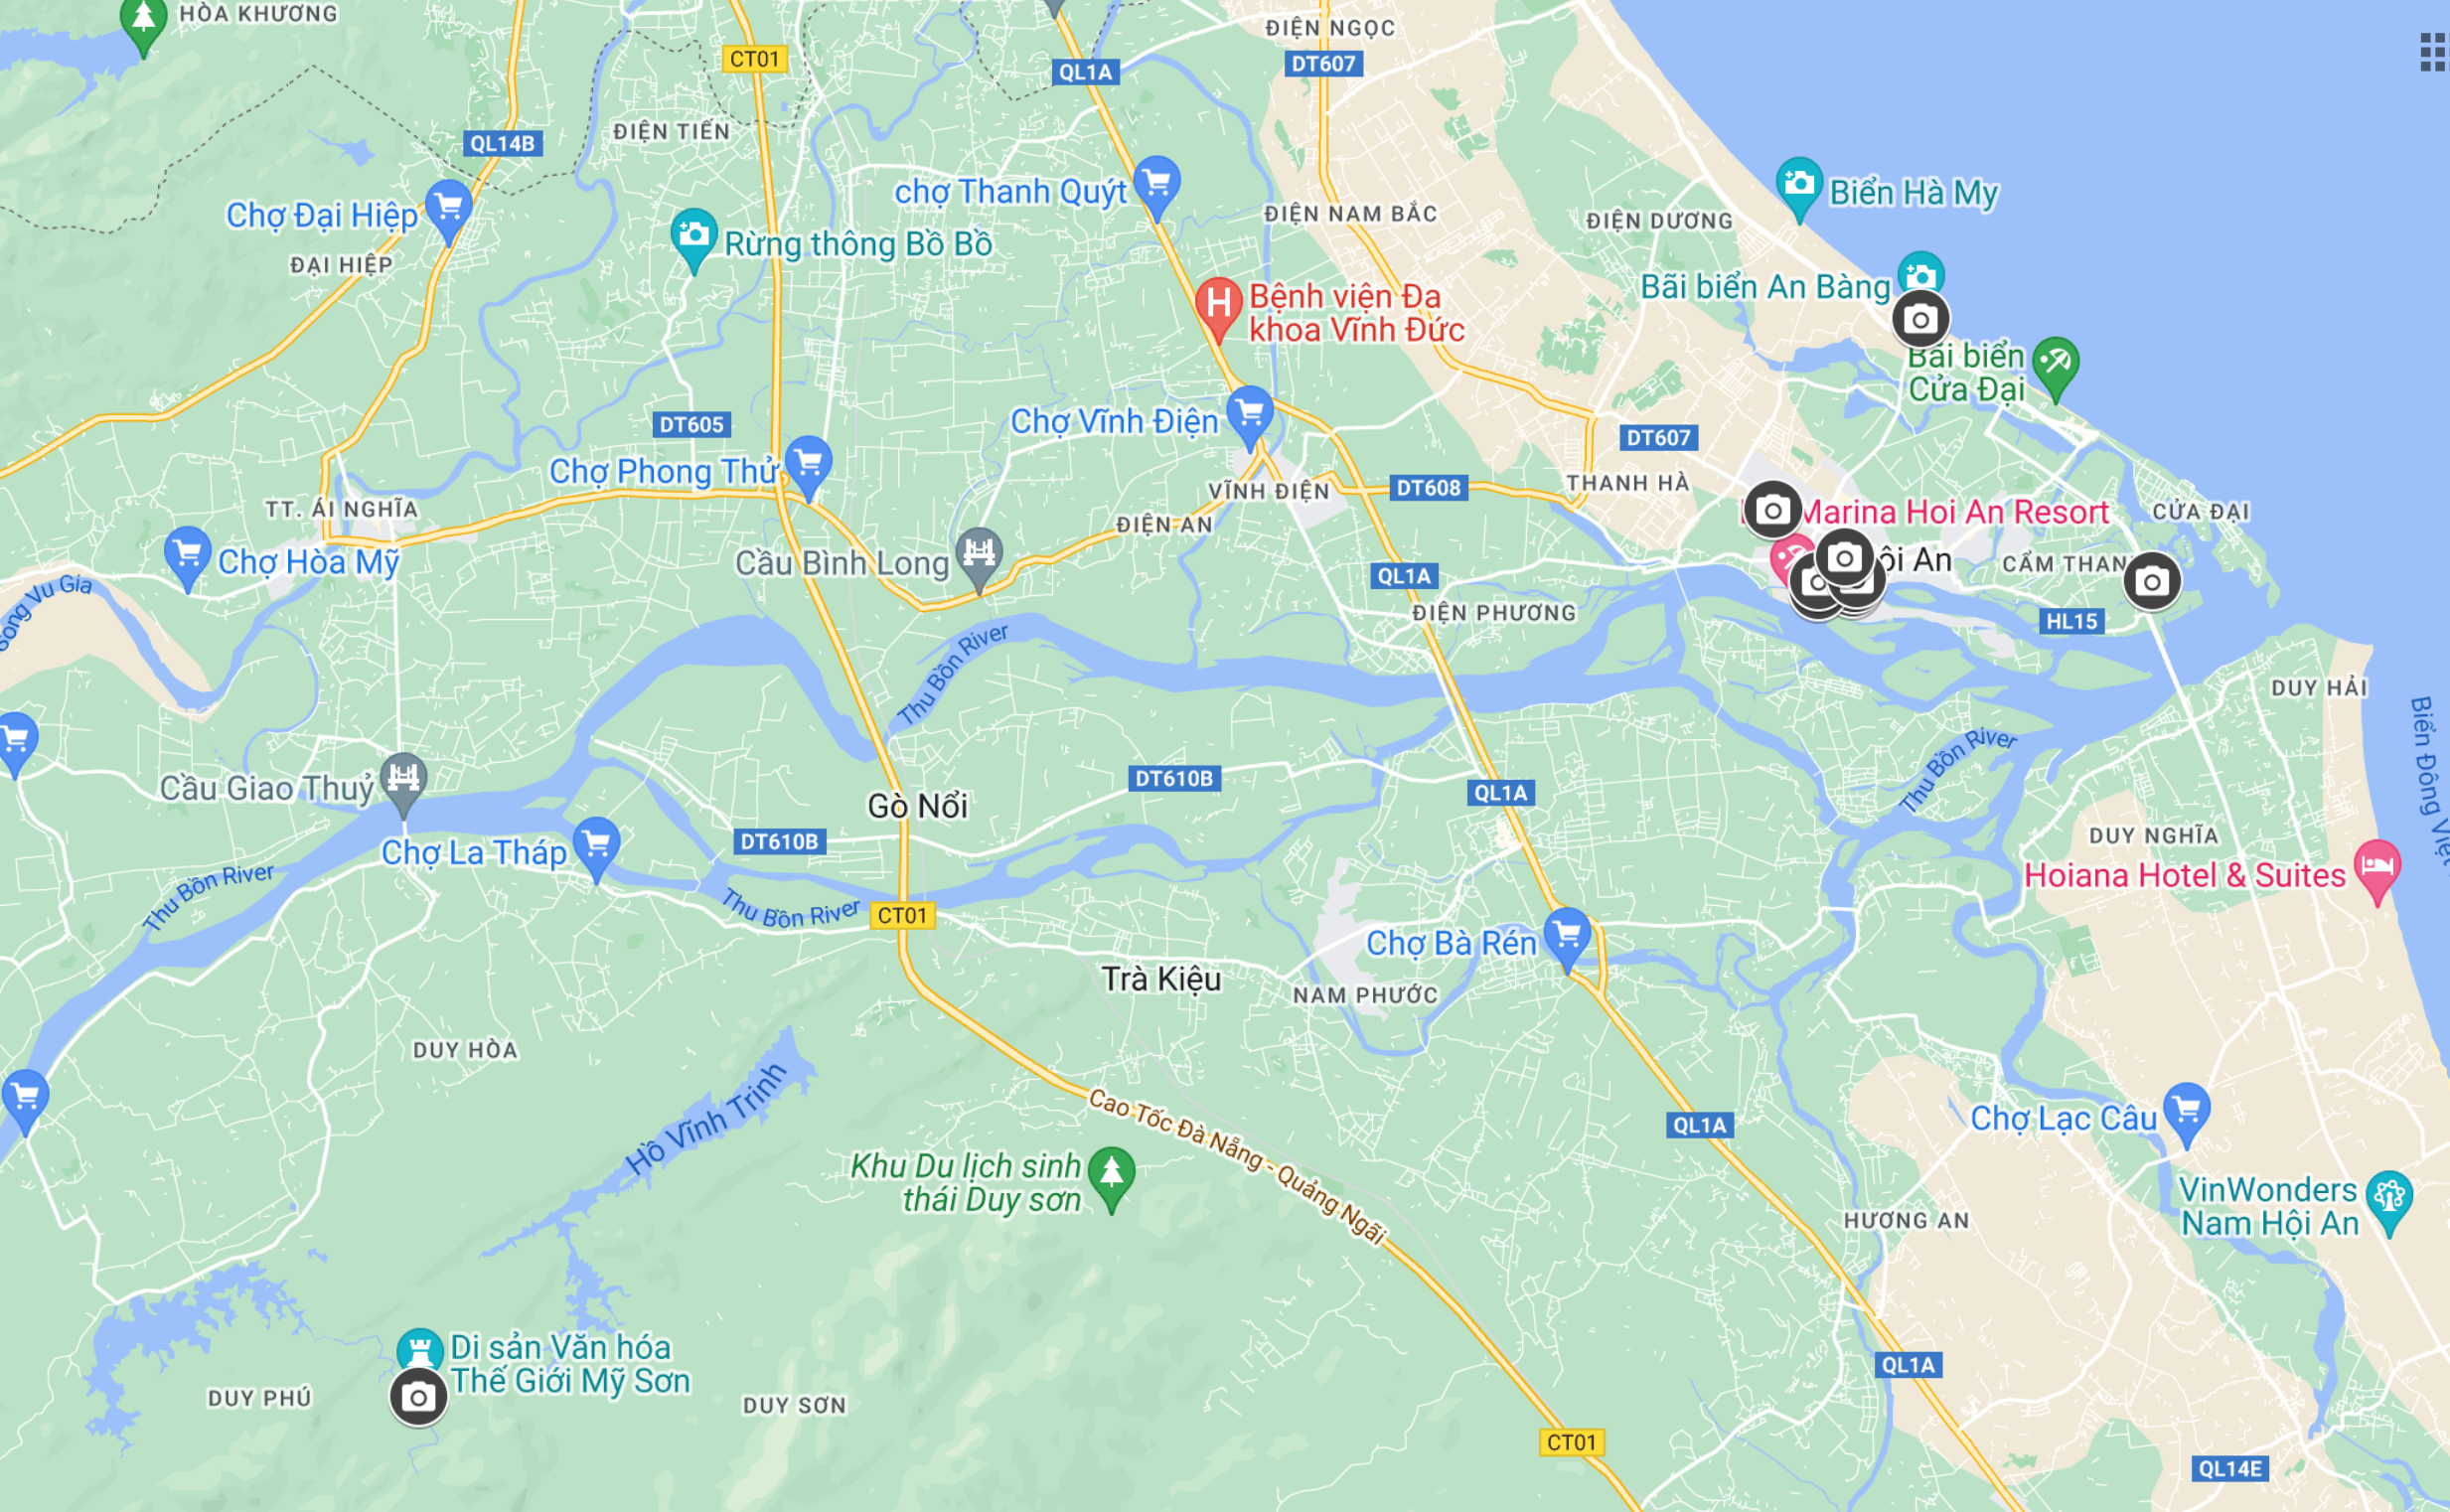 Google Maps Hoi An Vietnam